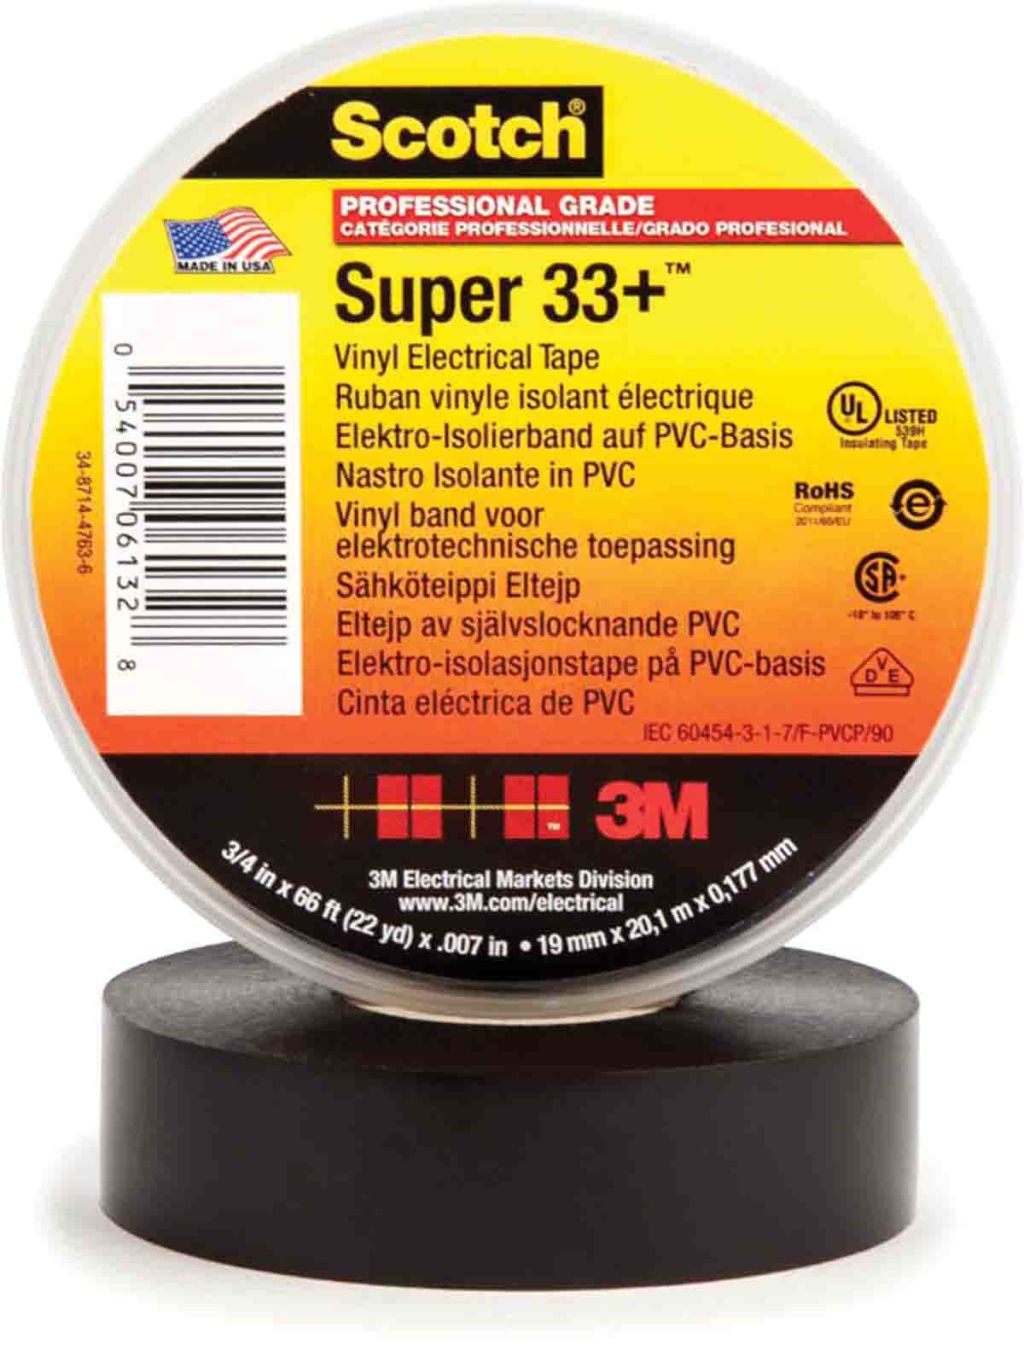 3M Scotch Super 33+ Black PVC Electrical Tape, 19mm x 6m - RS Components  Vietnam